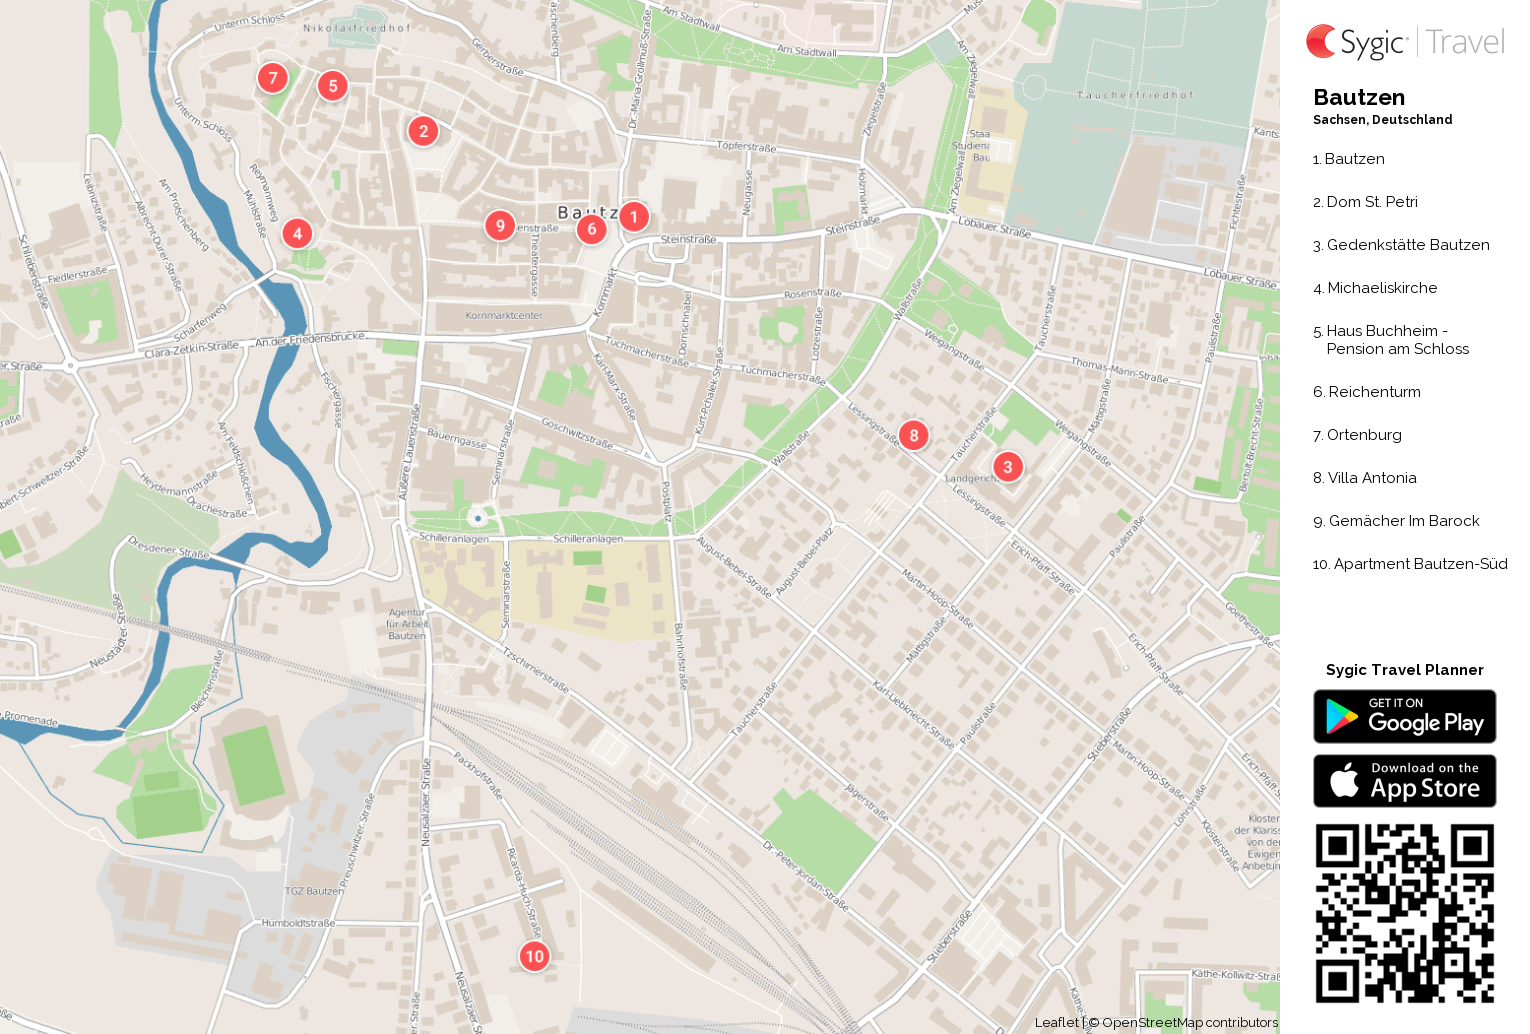 Karte von Bautzen ausdrucken | Sygic Travel